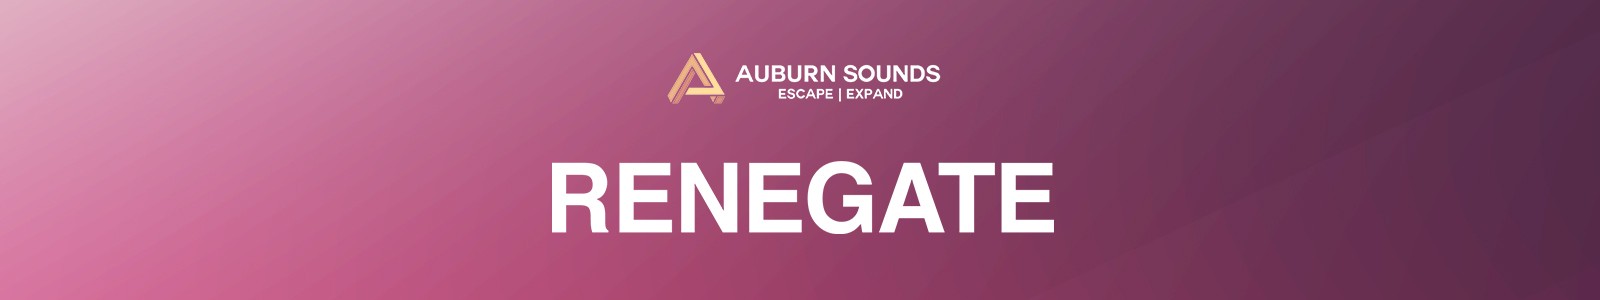 Auburn Sounds Renegate